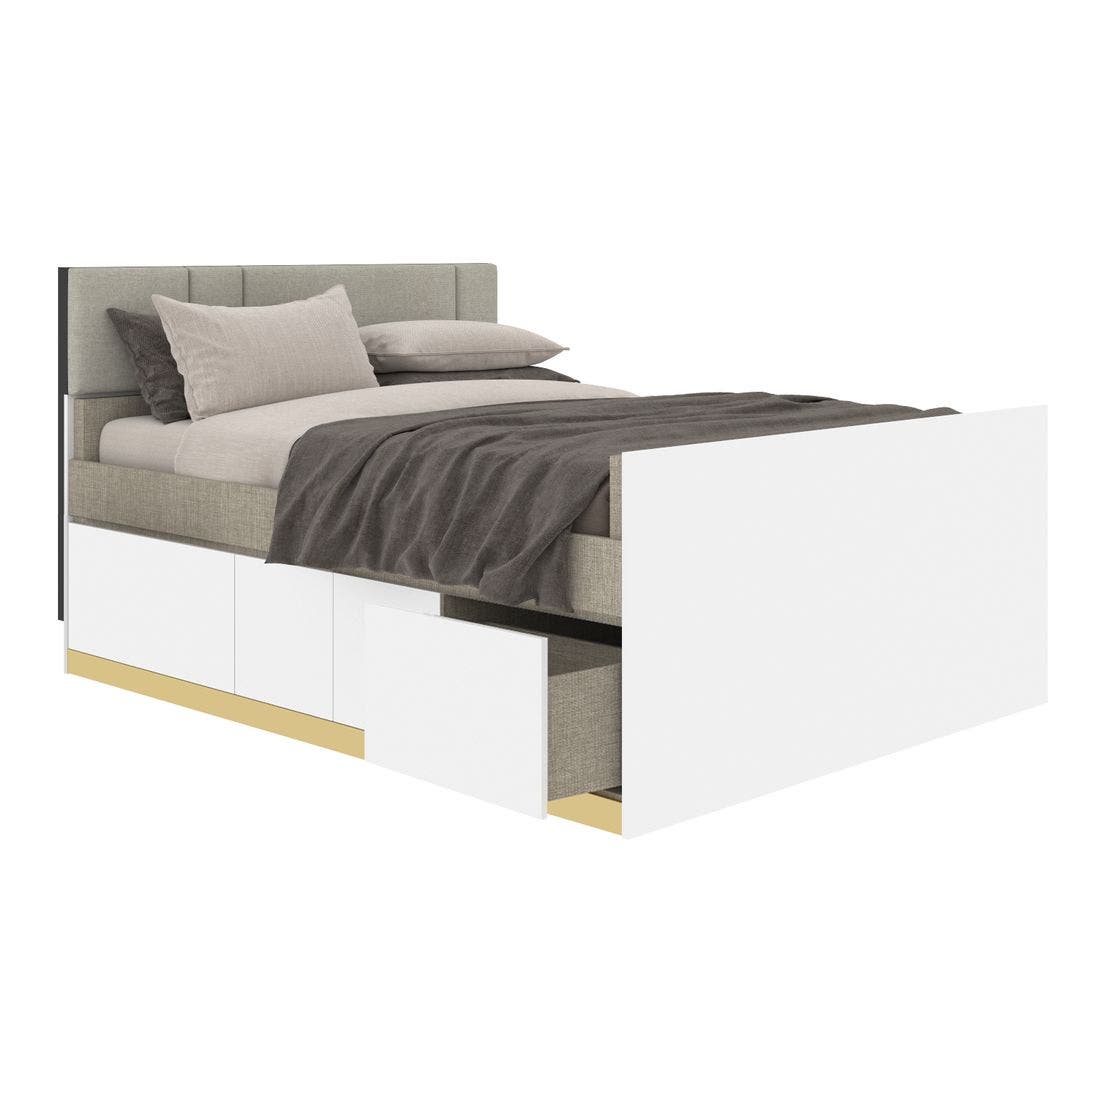 19203901-blisz-furniture-bedroom-furniture-beds-06